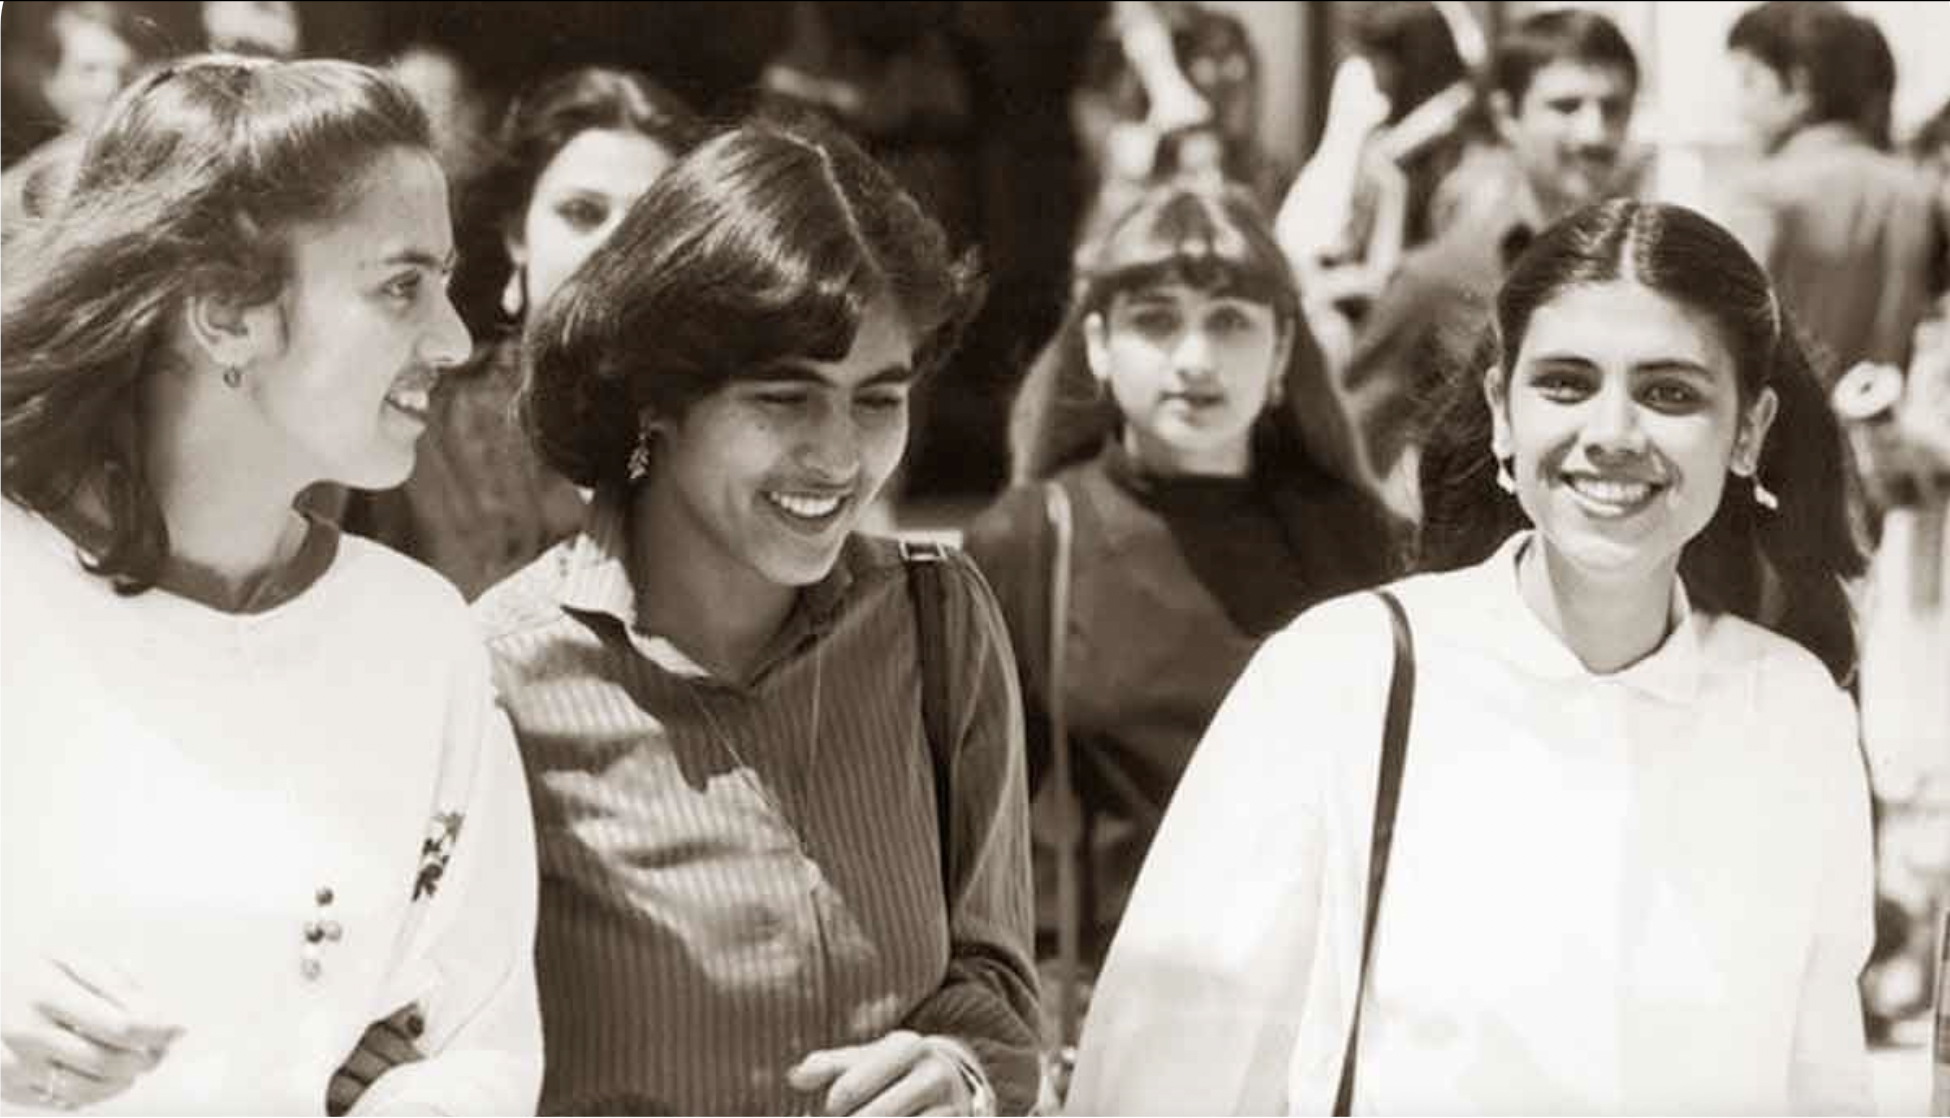 На фотографии изображены студентки кабульского политехнического института - представительницы типичной кабульской молодежи 70-х